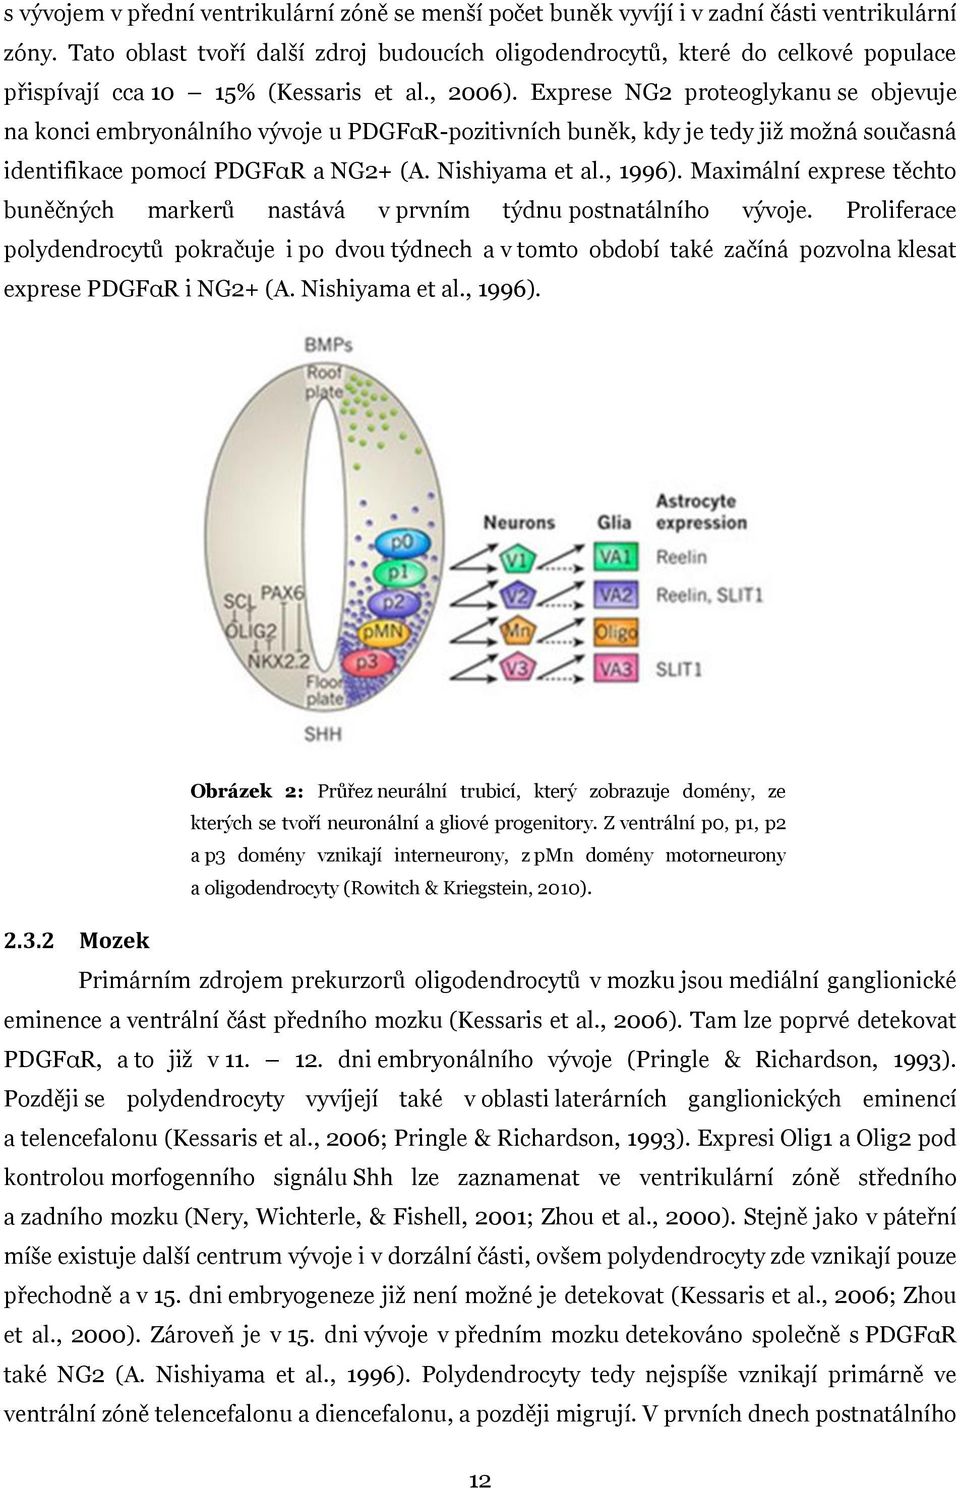 Exprese NG2 proteoglykanu se objevuje na konci embryonálního vývoje u PDGFαR-pozitivních buněk, kdy je tedy již možná současná identifikace pomocí PDGFαR a NG2+ (A. Nishiyama et al., 1996).